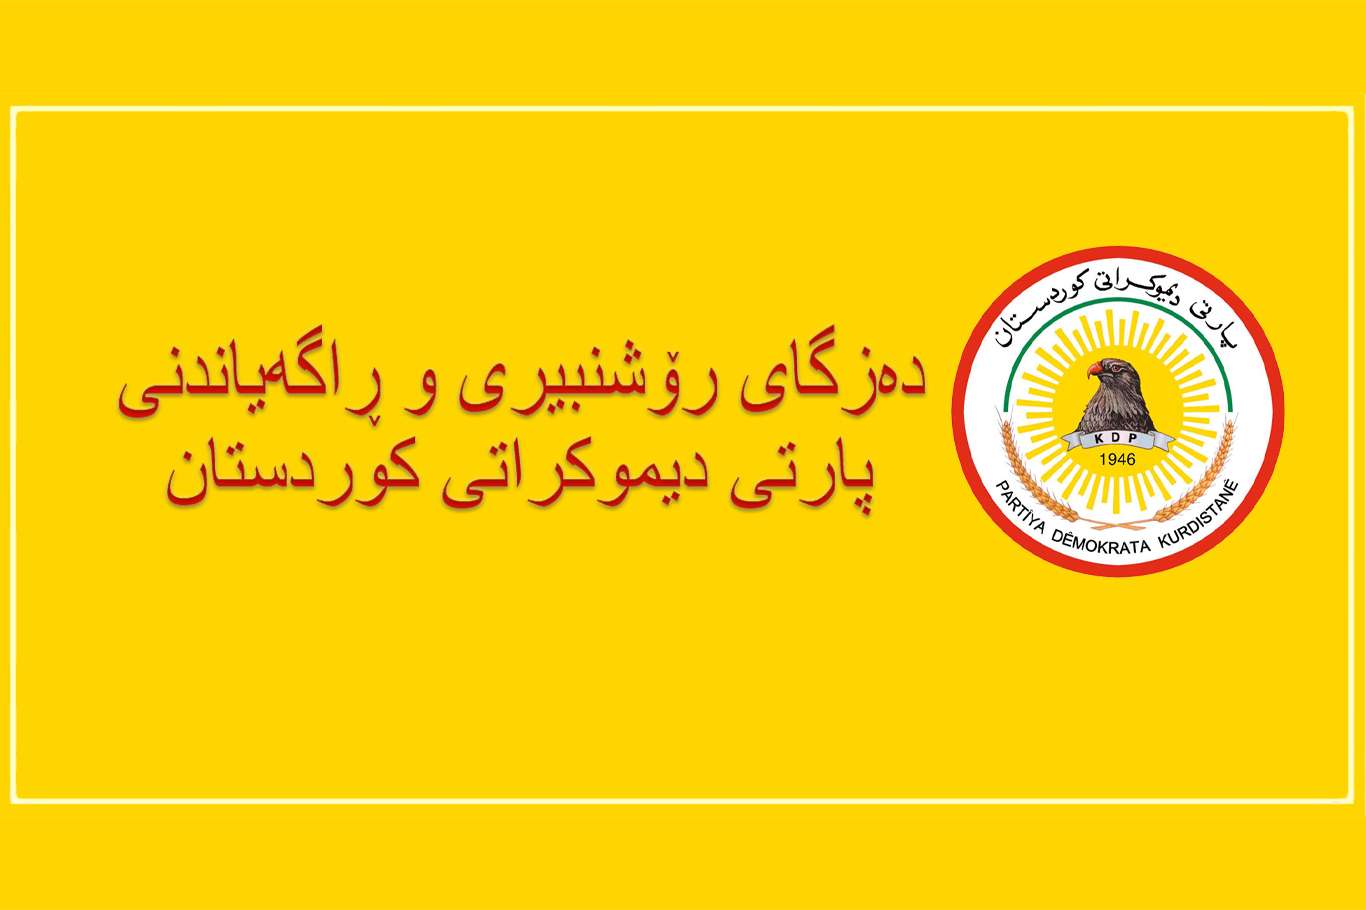 پارتی دیموكراتی كوردستان: پەکەکە مایەی سەرئێشە و شەڕوشۆڕی بێهوودە بوون بۆ خەڵكی كوردستان